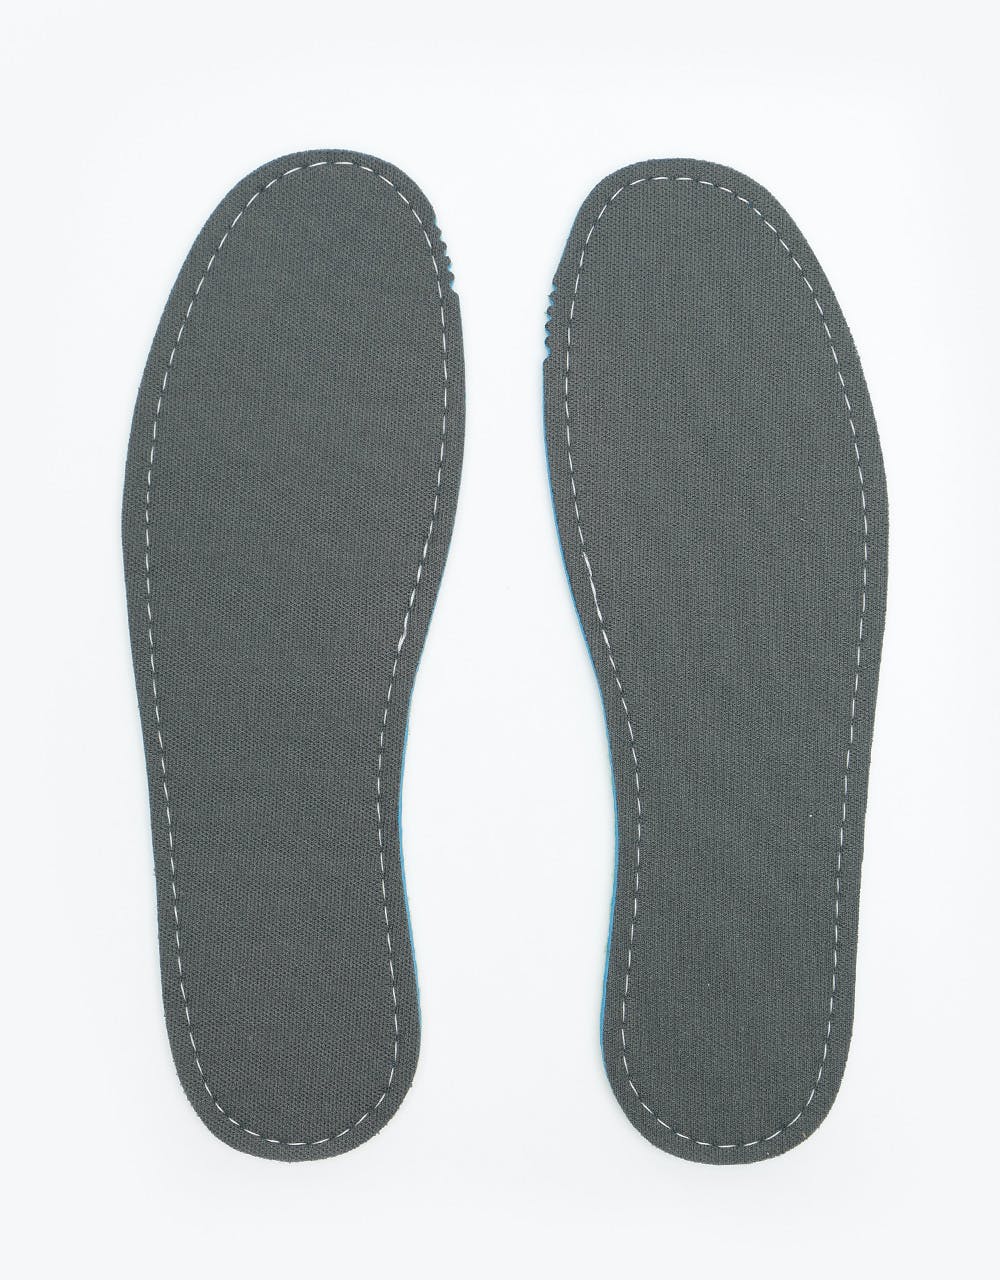 Footprint Jaws Feet 7mm Kingfoam Insoles